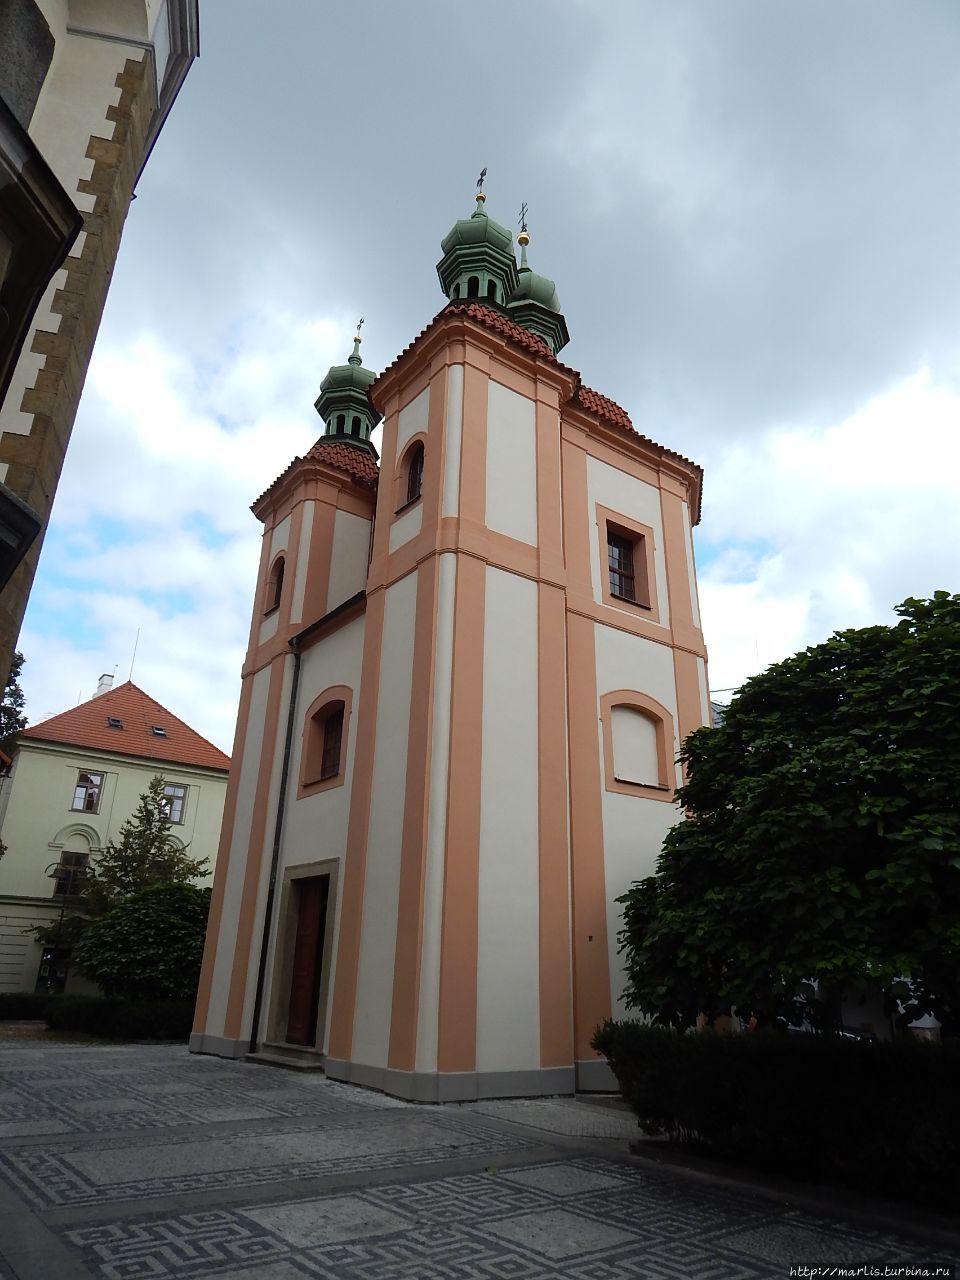 Кафедральный собор Св. Микулаша (Святого Николая) Ческе-Будеёвице, Чехия